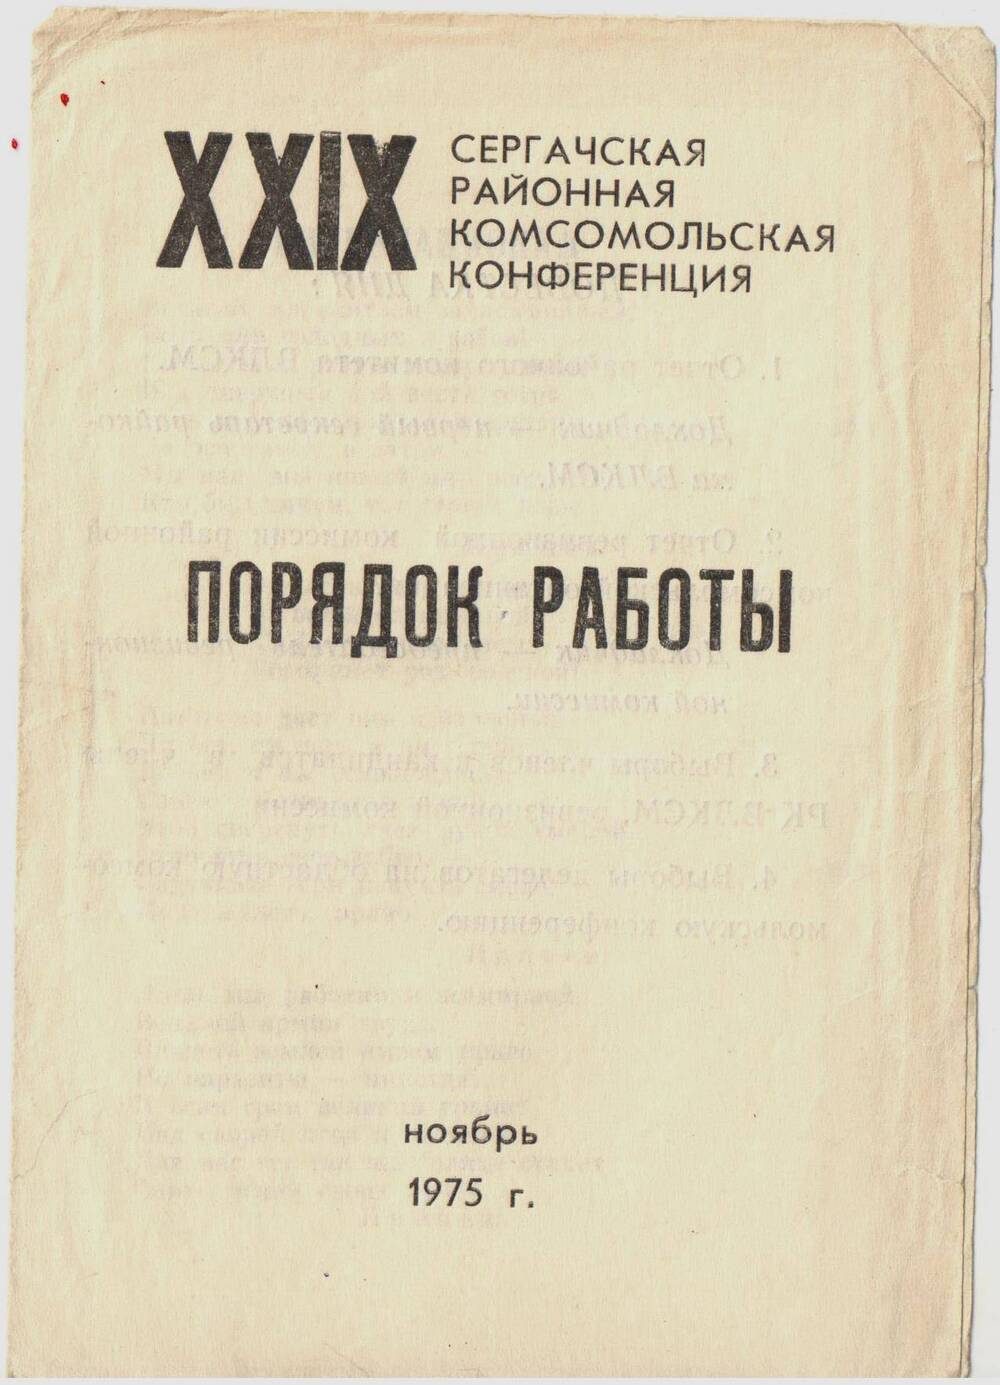 Порядок работы ХХIХ Сергачской районной комсомольской конференции  1975 г